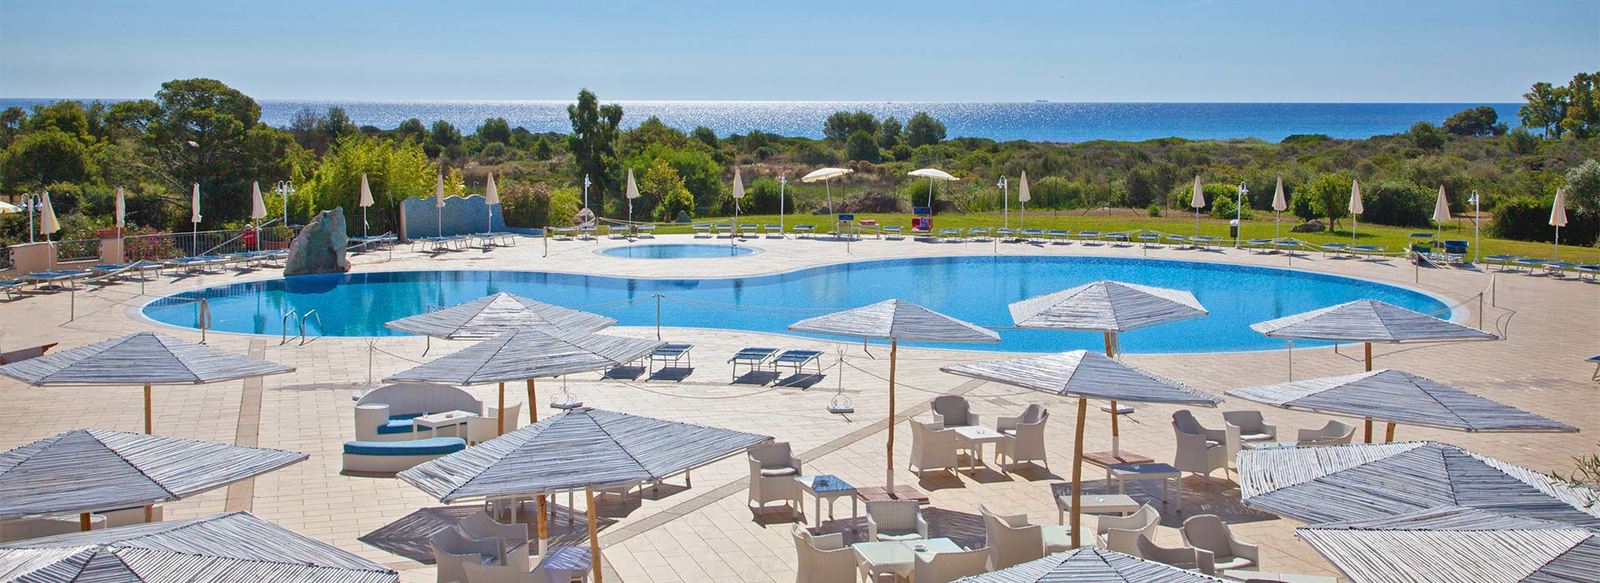 Hotel Baia Del Porto 4*, pensione completa, servizio spiaggia, volo incluso, 7 notti da €635